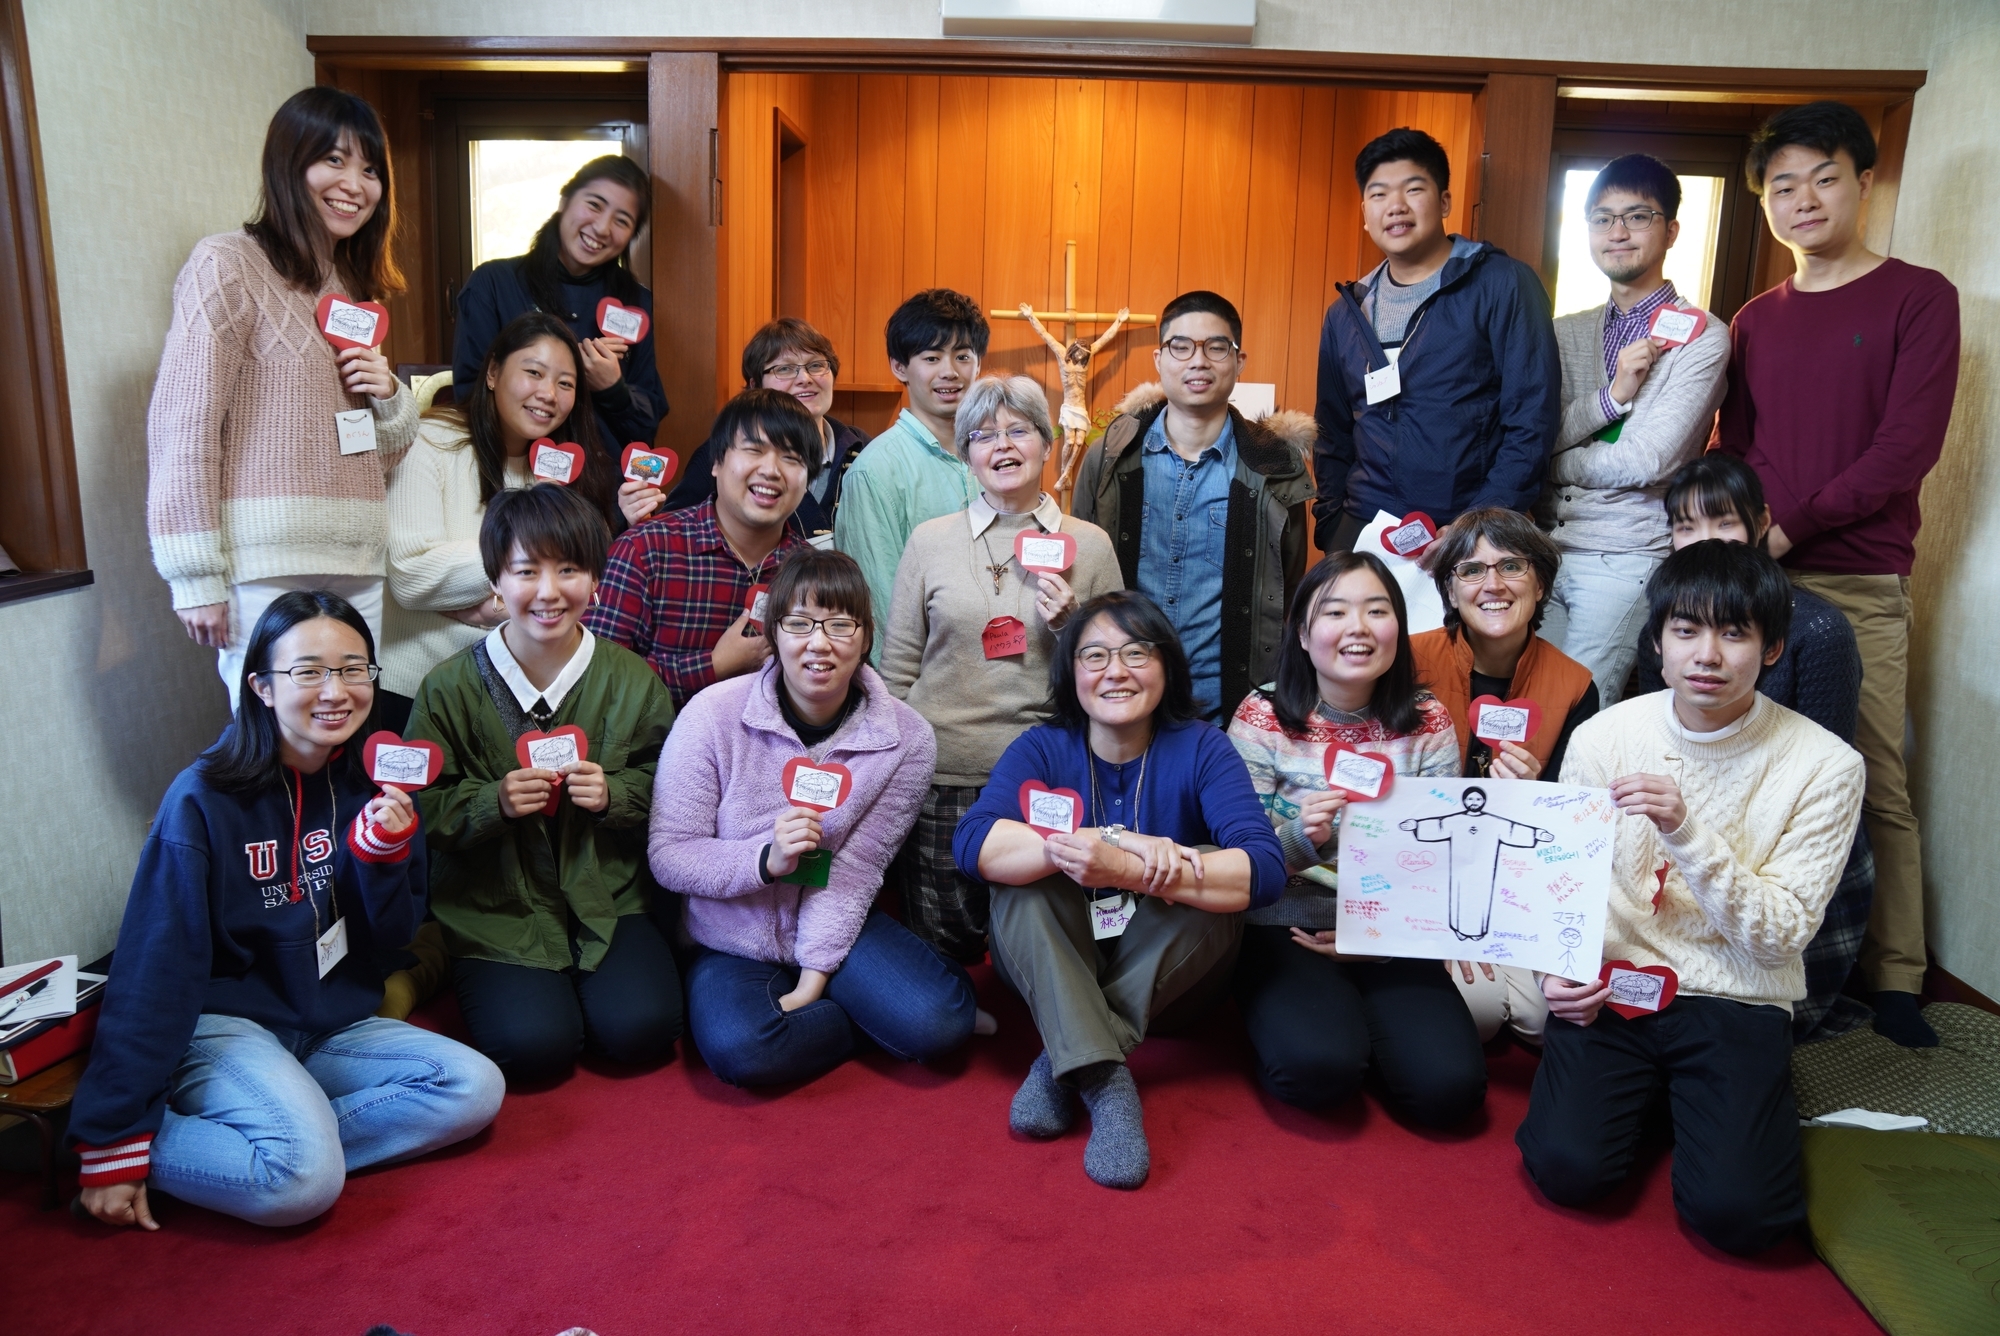 "Los jóvenes de familias católicas sufren mucho, porque aprenden y conocen el perdón, pero en la escuela o con los amigos no se tiene el mismo ambiente": Hna. Momoko Nishimura. En la imagen, Nishimura (abajo en el centro) con un grupo de jóvenes en la capilla de la casa de la misión en Yokohama, en donde se les acoge. (Foto: cortesía Momoko Nishimura)